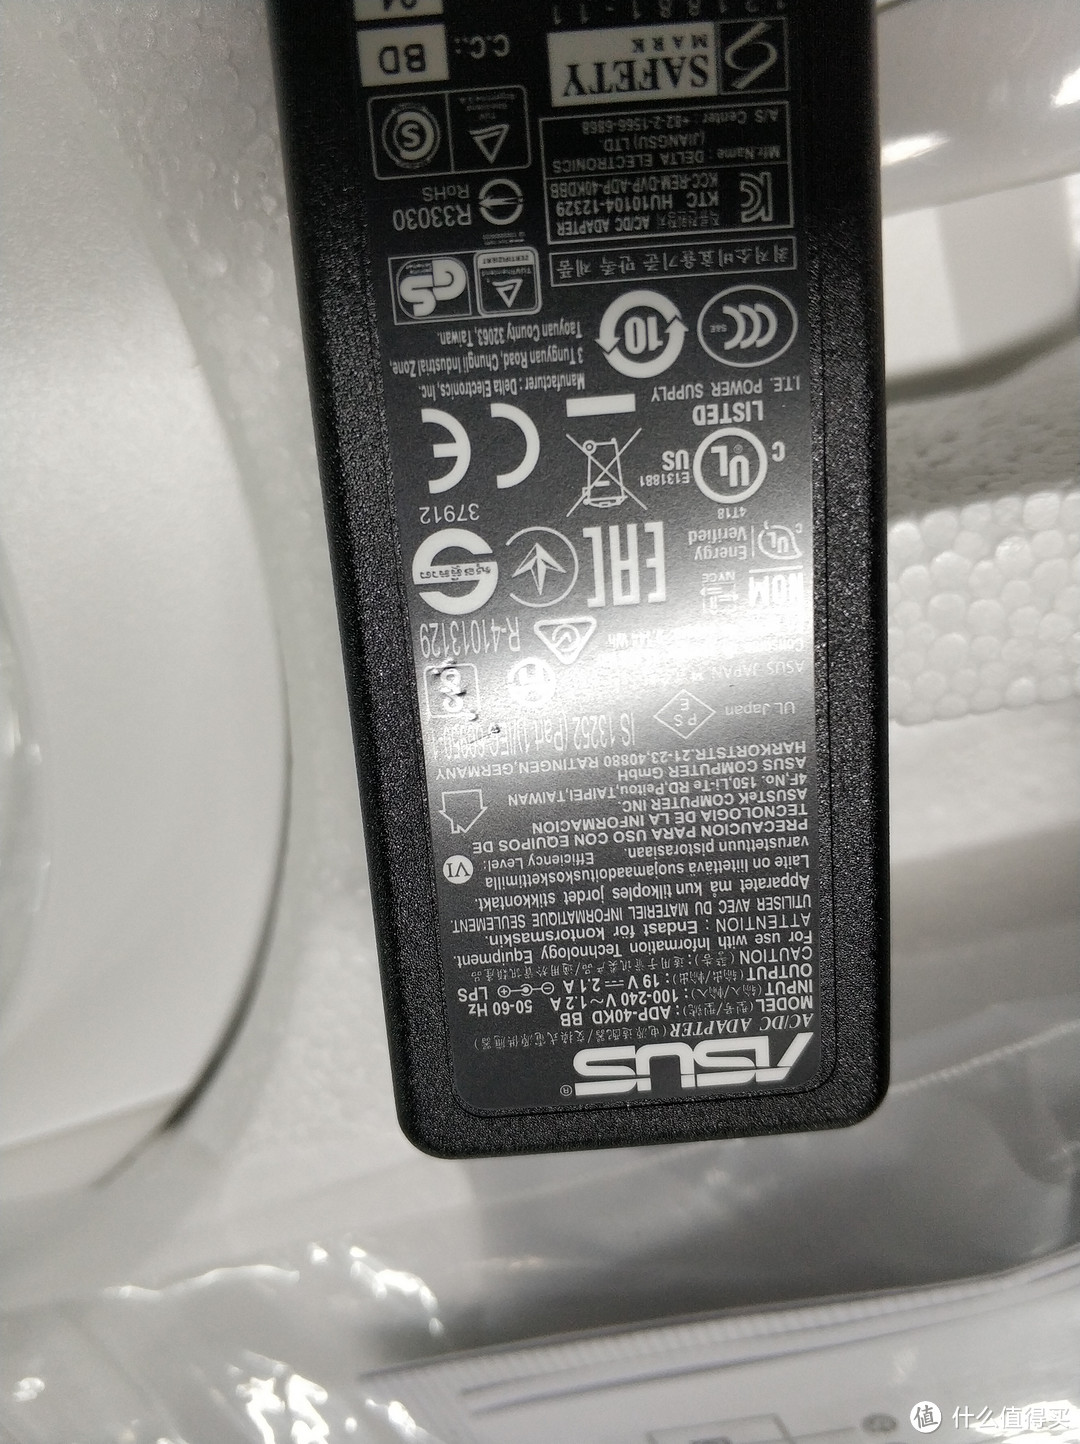 白色前台显示器：ASUS 华硕 VX229N-W 显示器 晒单